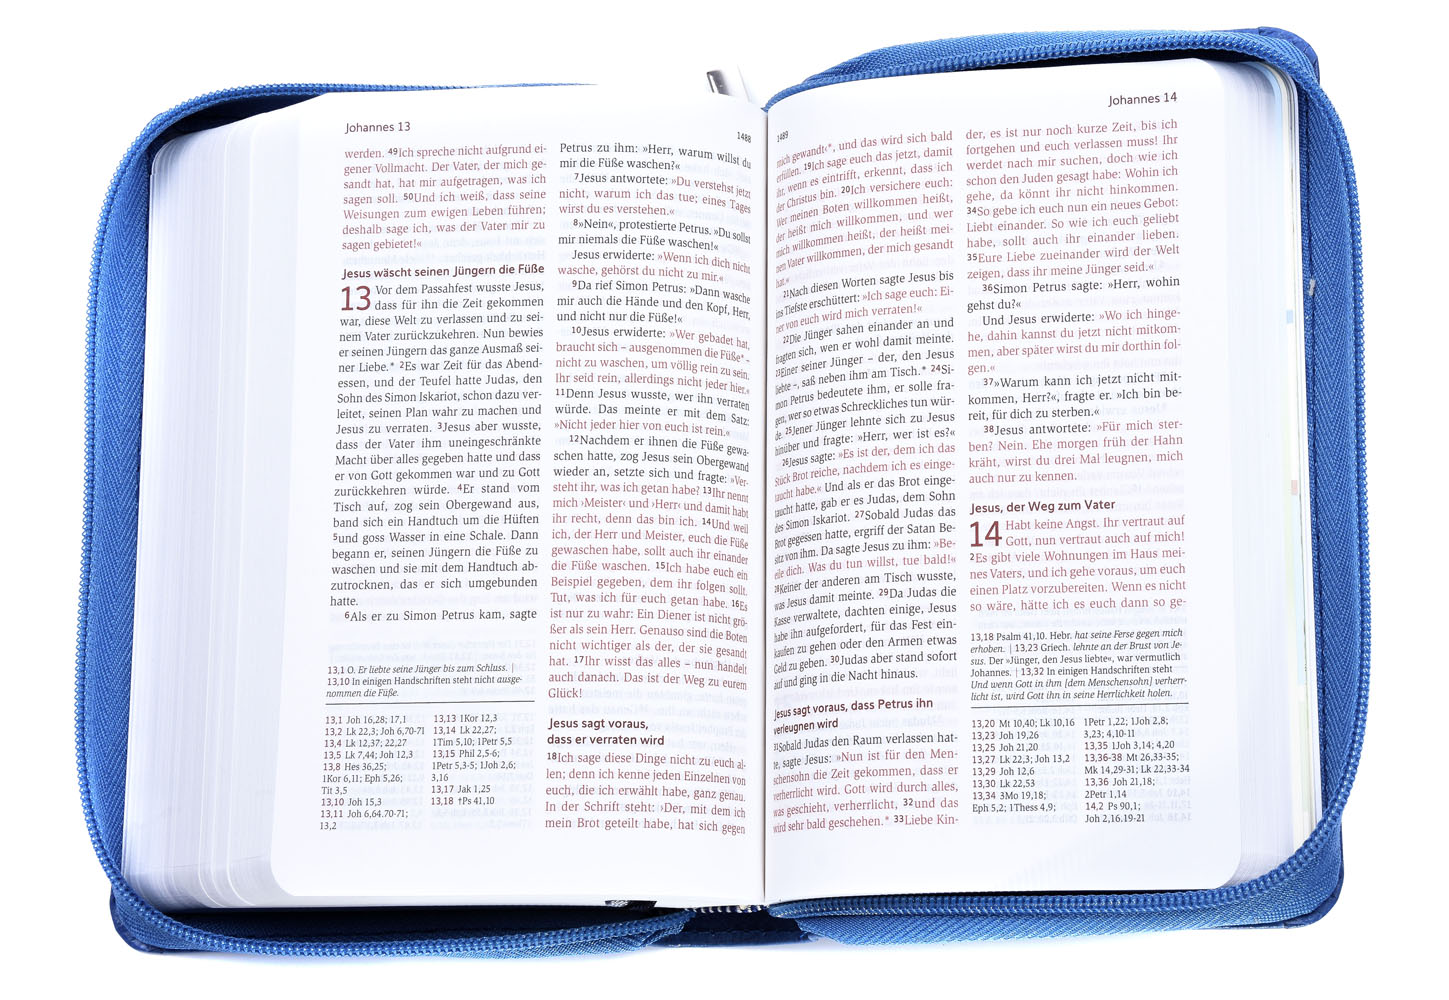 Neues Leben. Die Bibel - Taschenausgabe - Kunstleder mit Reißverschluss